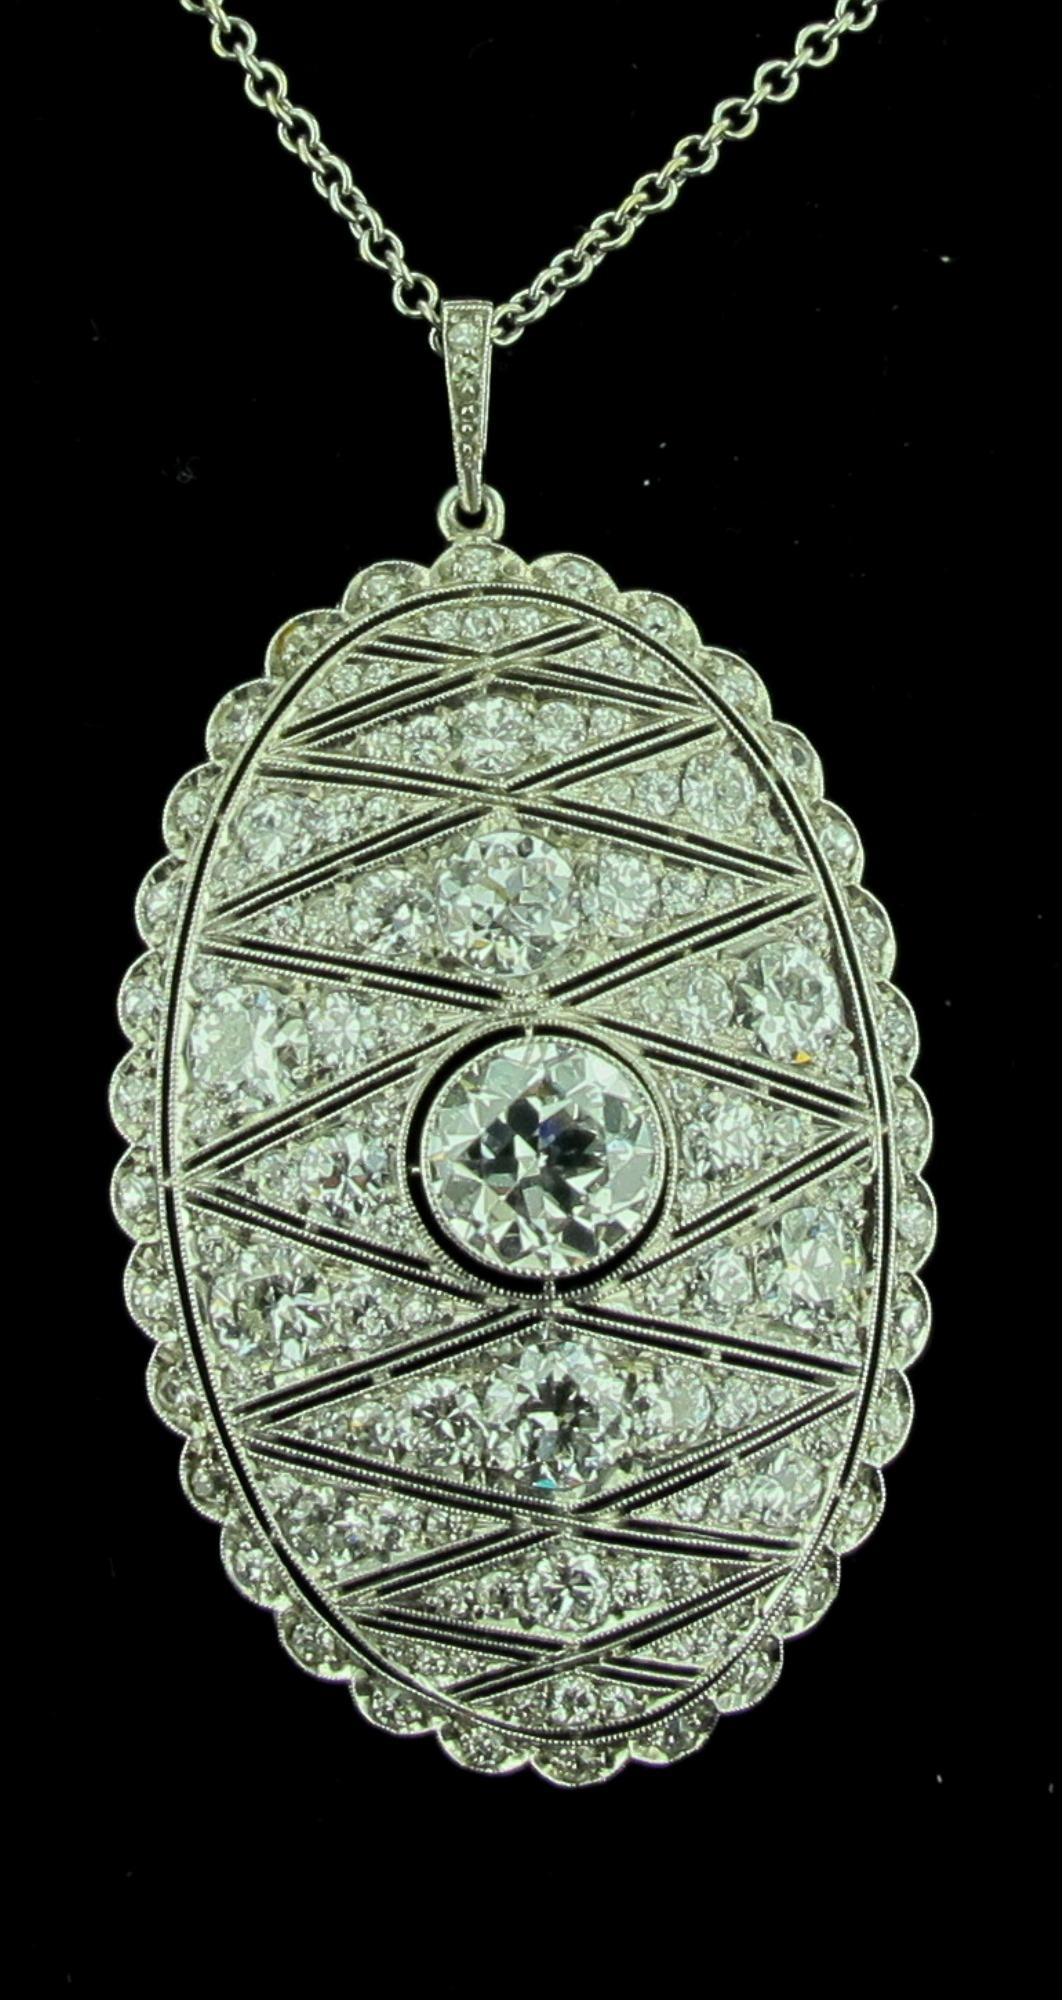 De la période Art Déco, vers 1925, se trouve ce pendentif en diamant serti en platine.  Le diamant central pèse 1,50 carat.  La couleur est H, la clarté est VS.  Le pendentif ovale est recouvert de diamants de taille ronde d'un poids total de 3,75